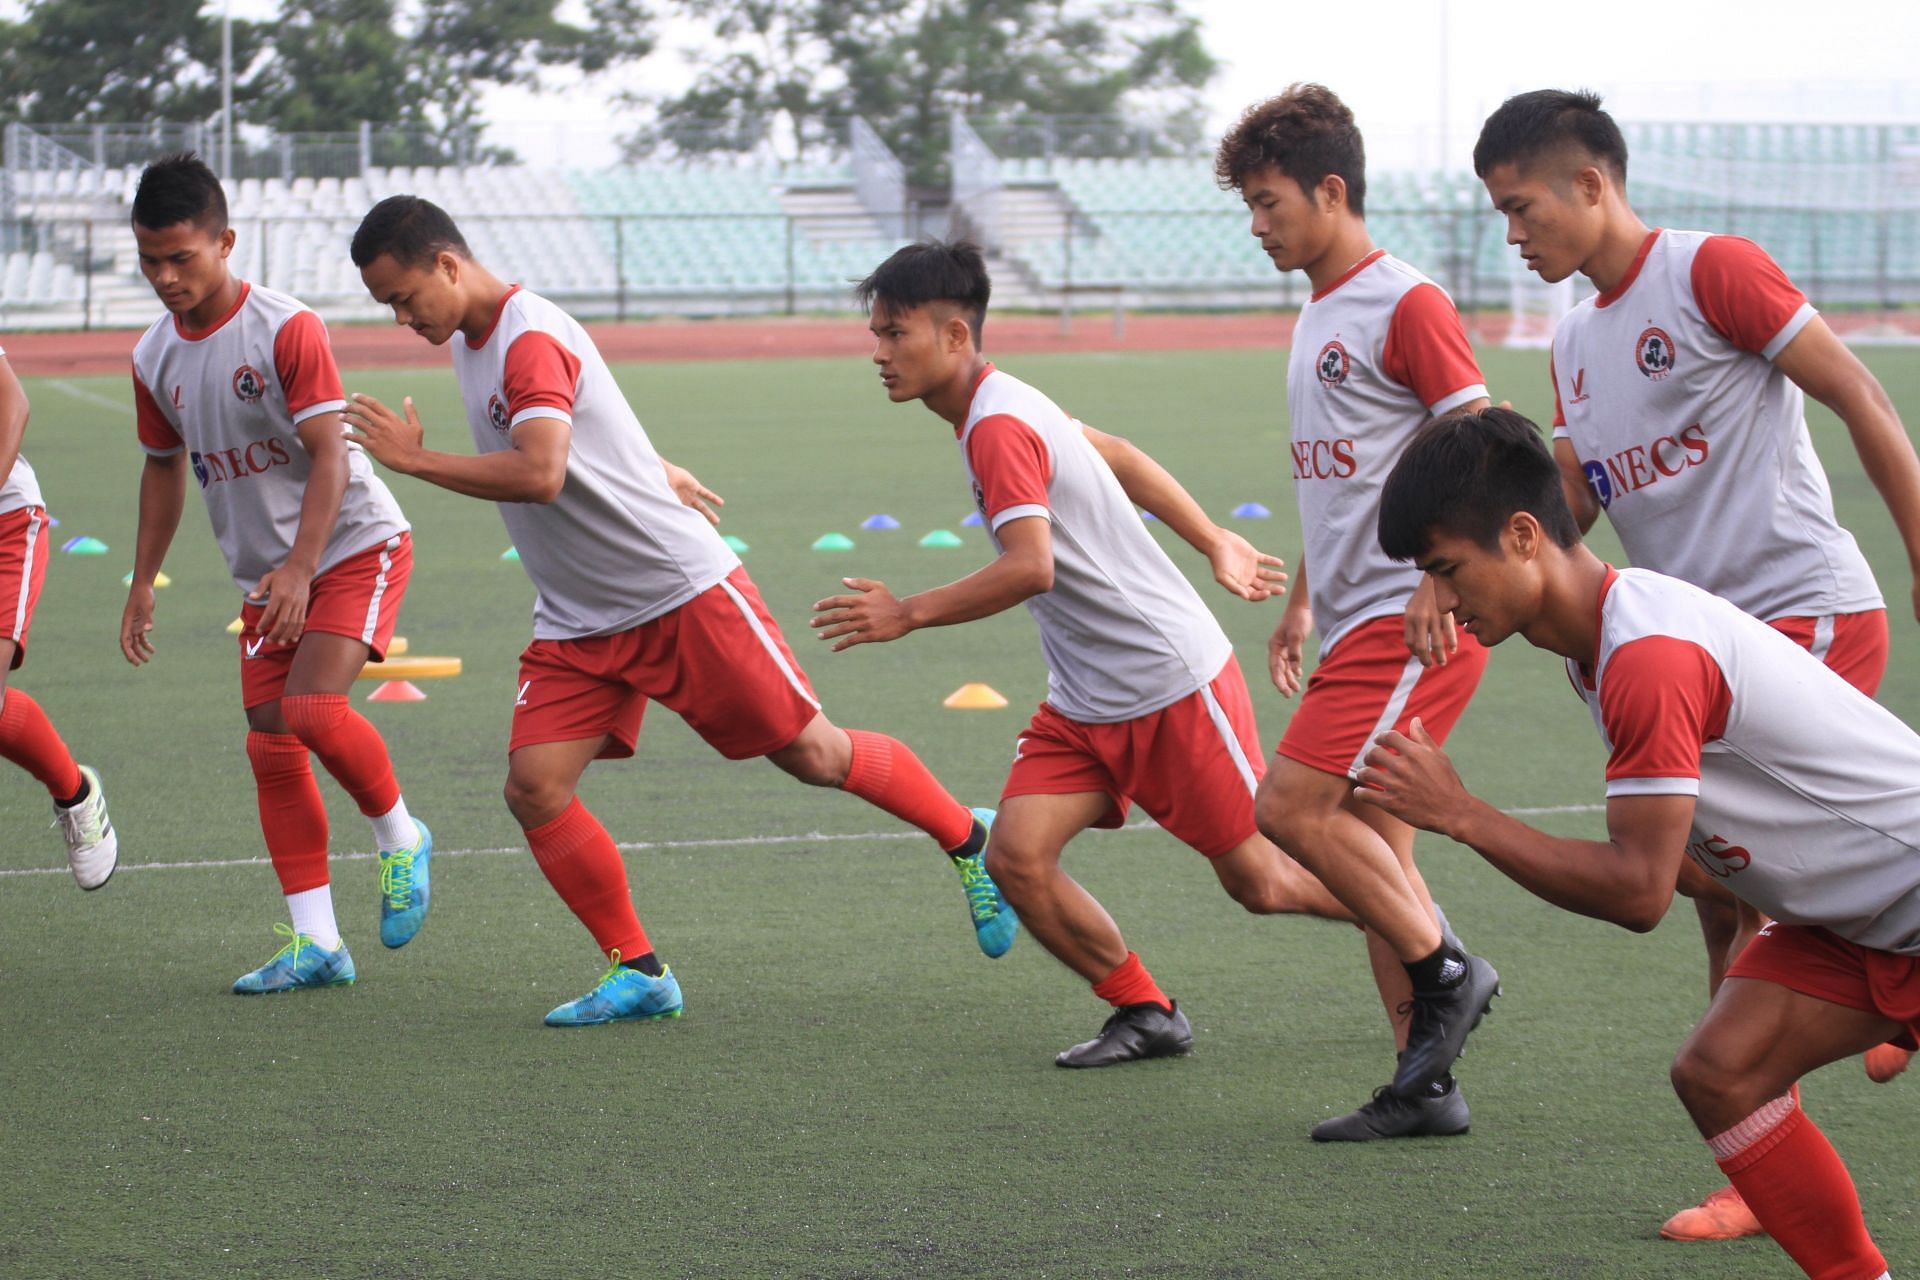 Aizawl FC players train ahead of the upcoming I-League season - Image Courtesy: I-League Twitter